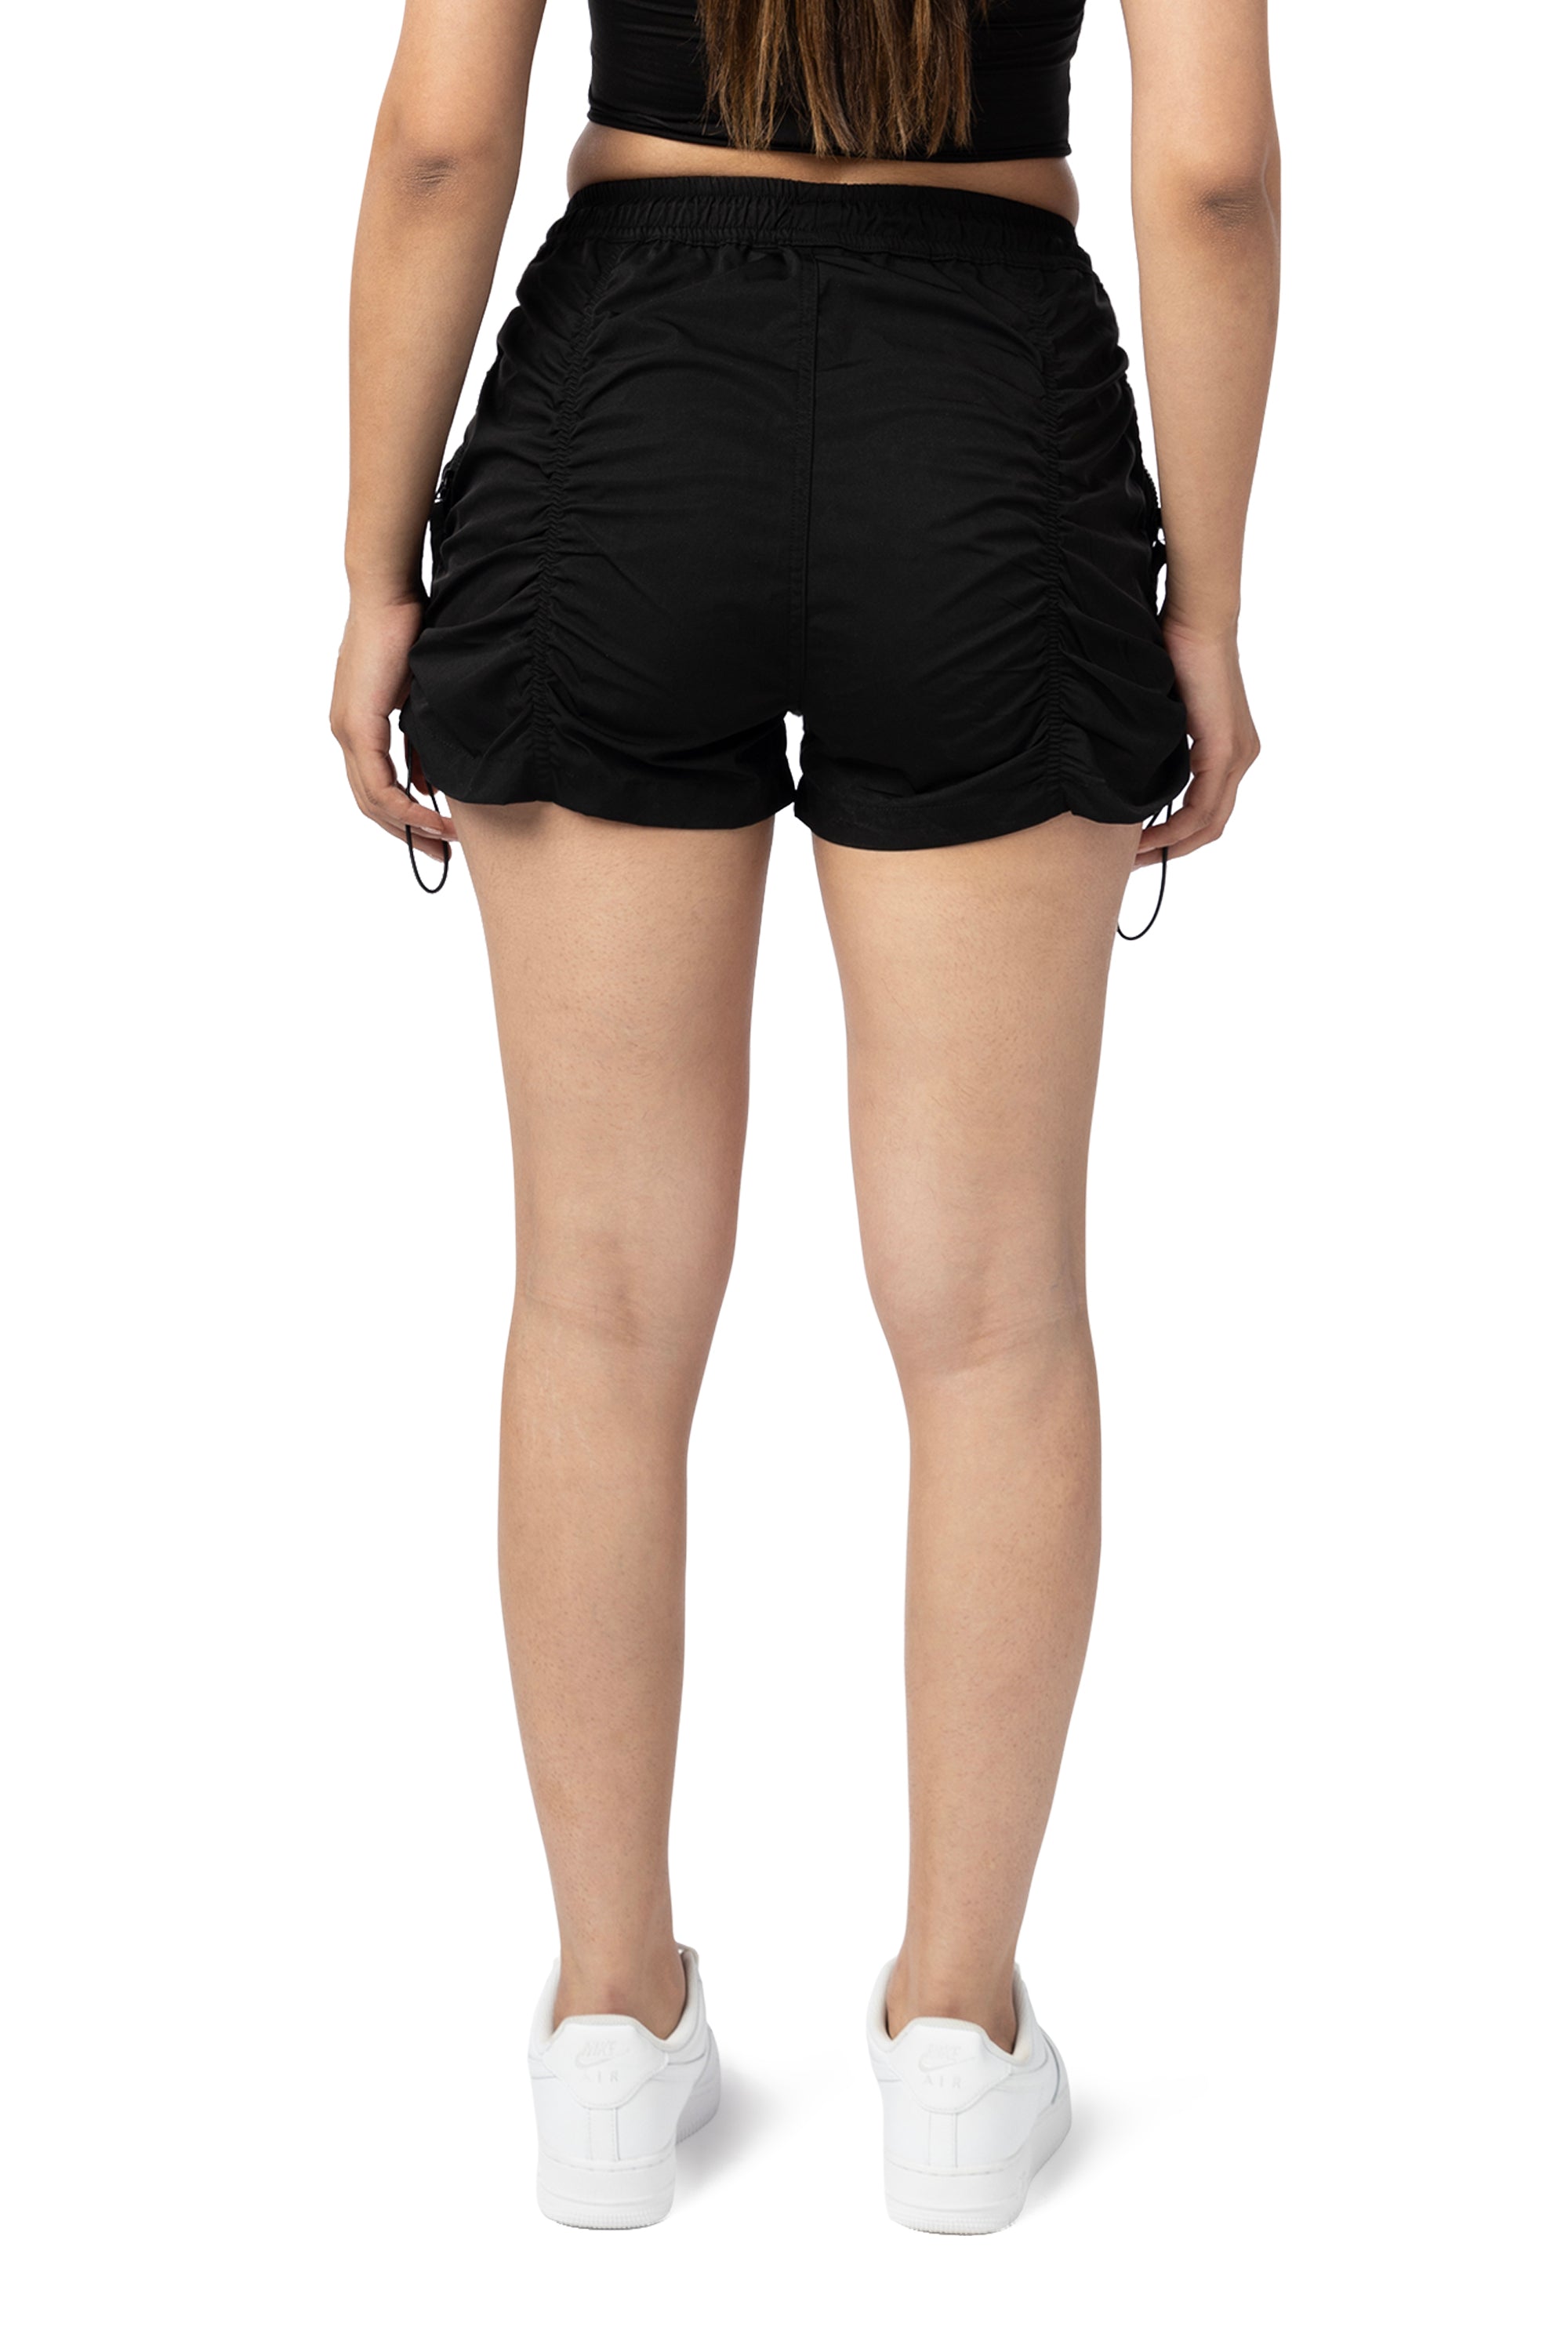 Utility Shirring Shorts - Black